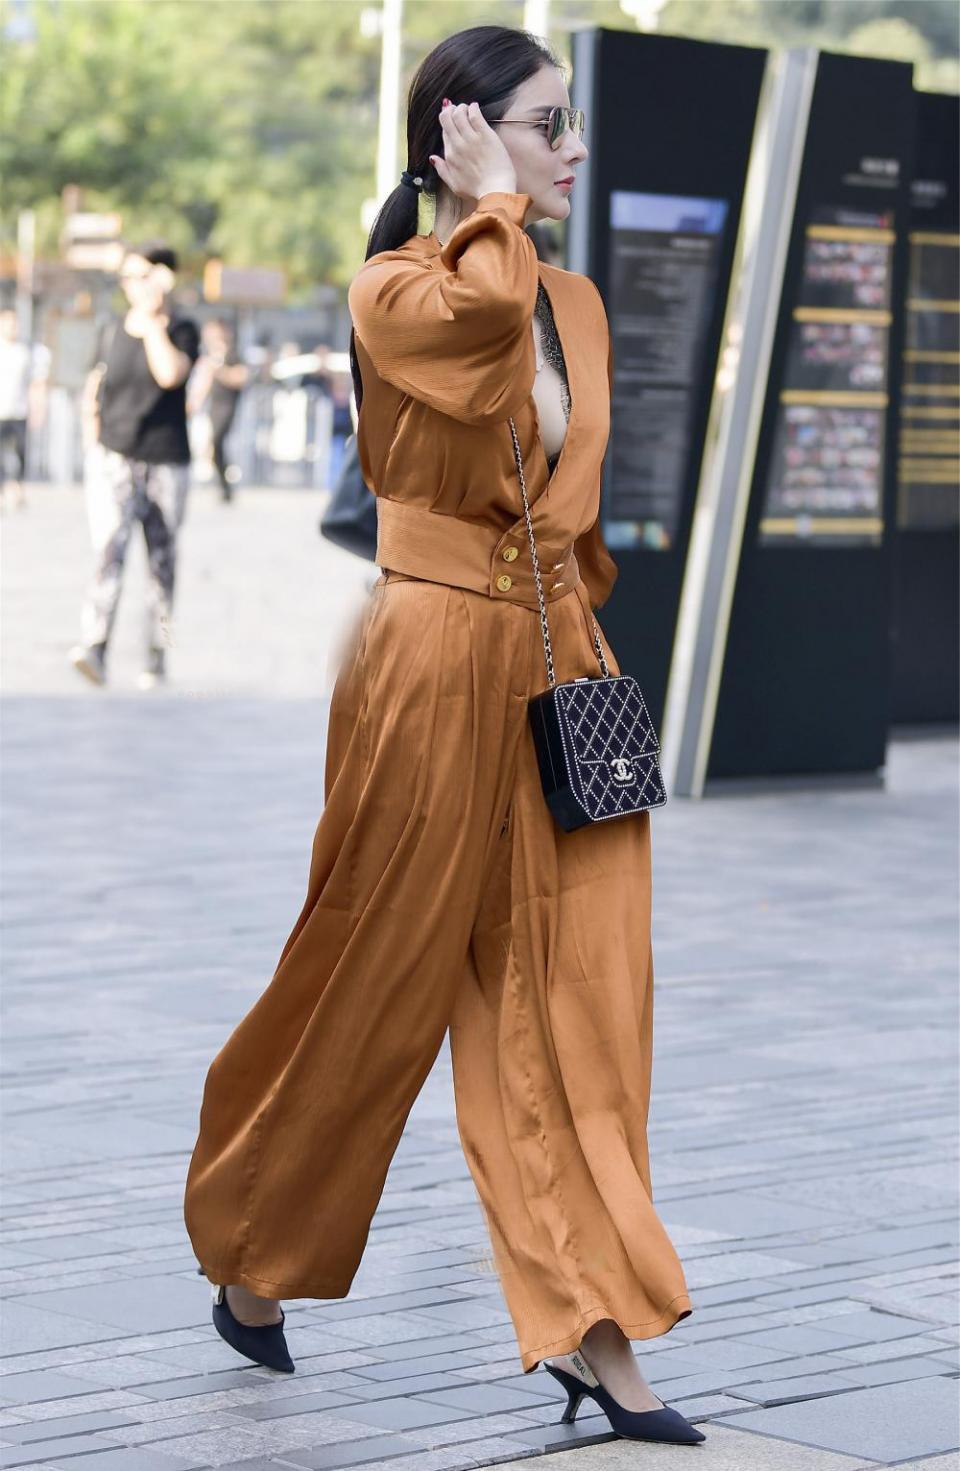 街拍:女王范十足的时尚美女, 一身金色阔腿裤套装气场